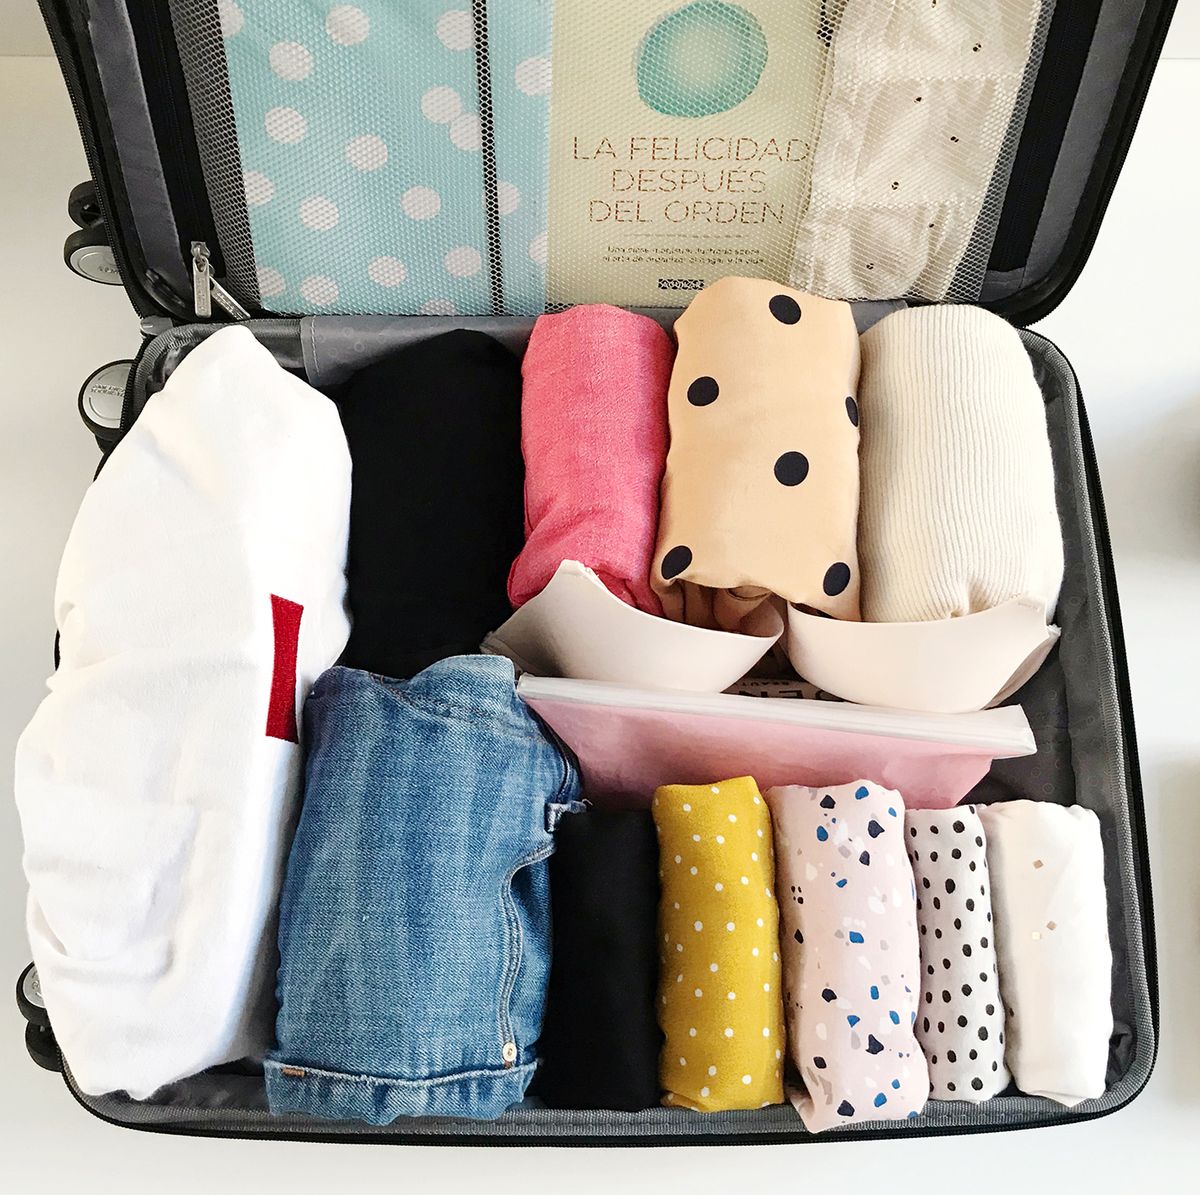 Cómo hacer la maleta perfecta según Marie Kondo - Orden